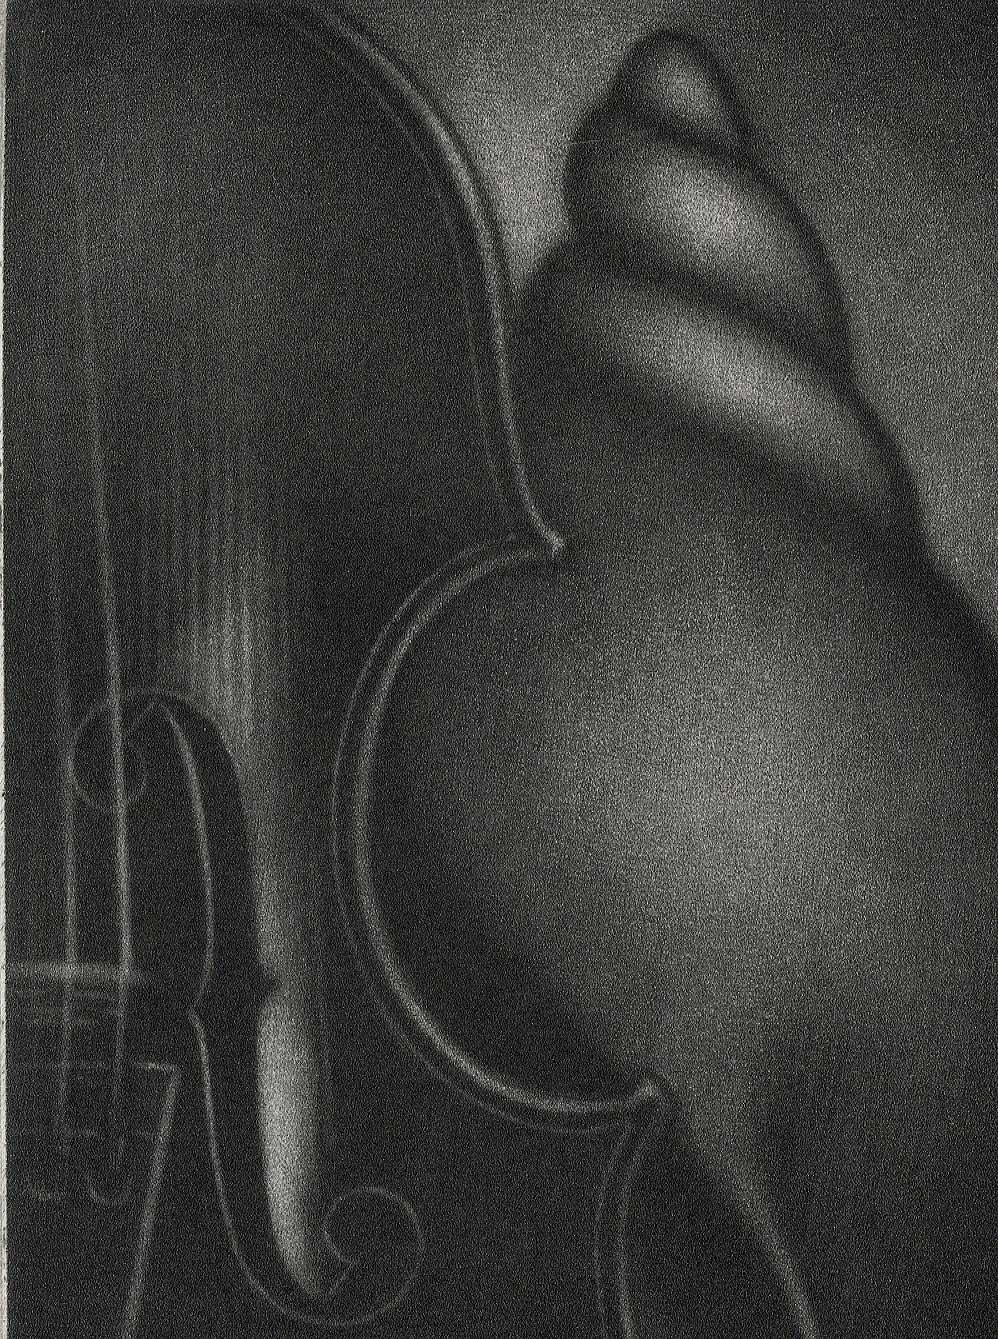 Violin et Coquille (Violin und Muschel / beschriftet Happy New Year 2000) – Print von Laurent Schkolnyk